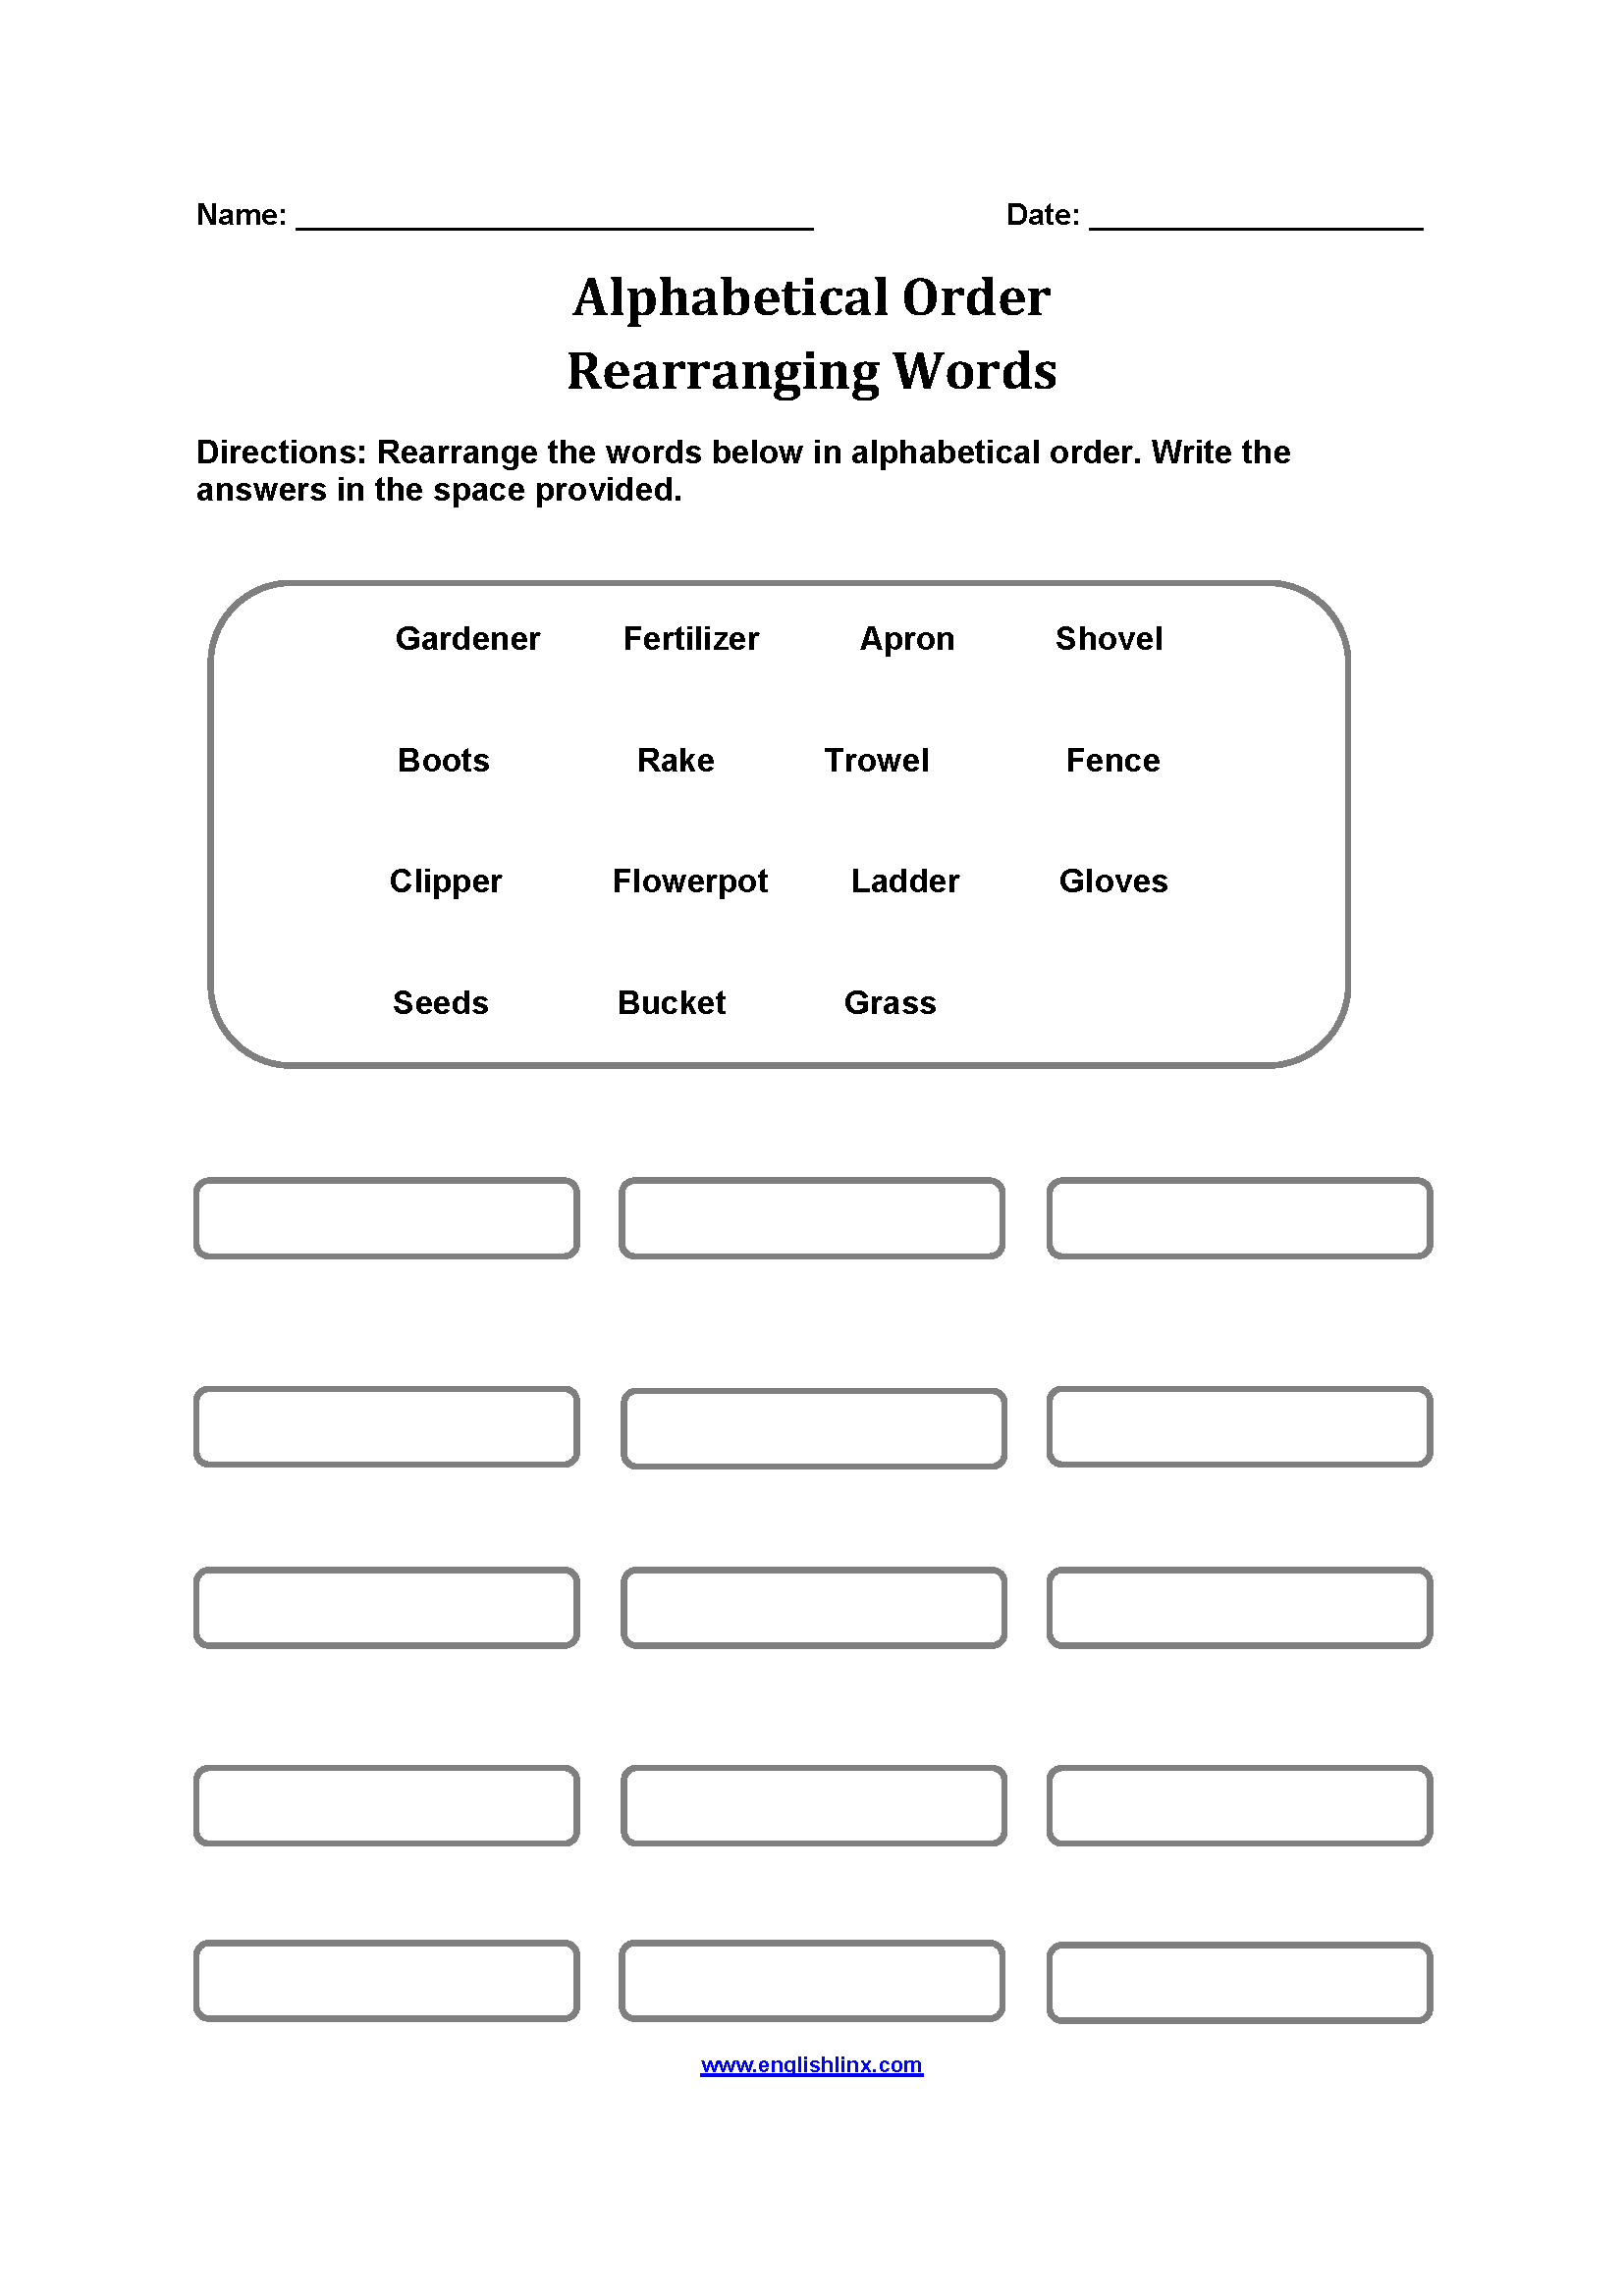 Rearranging Words Alphabetical Order Worksheets